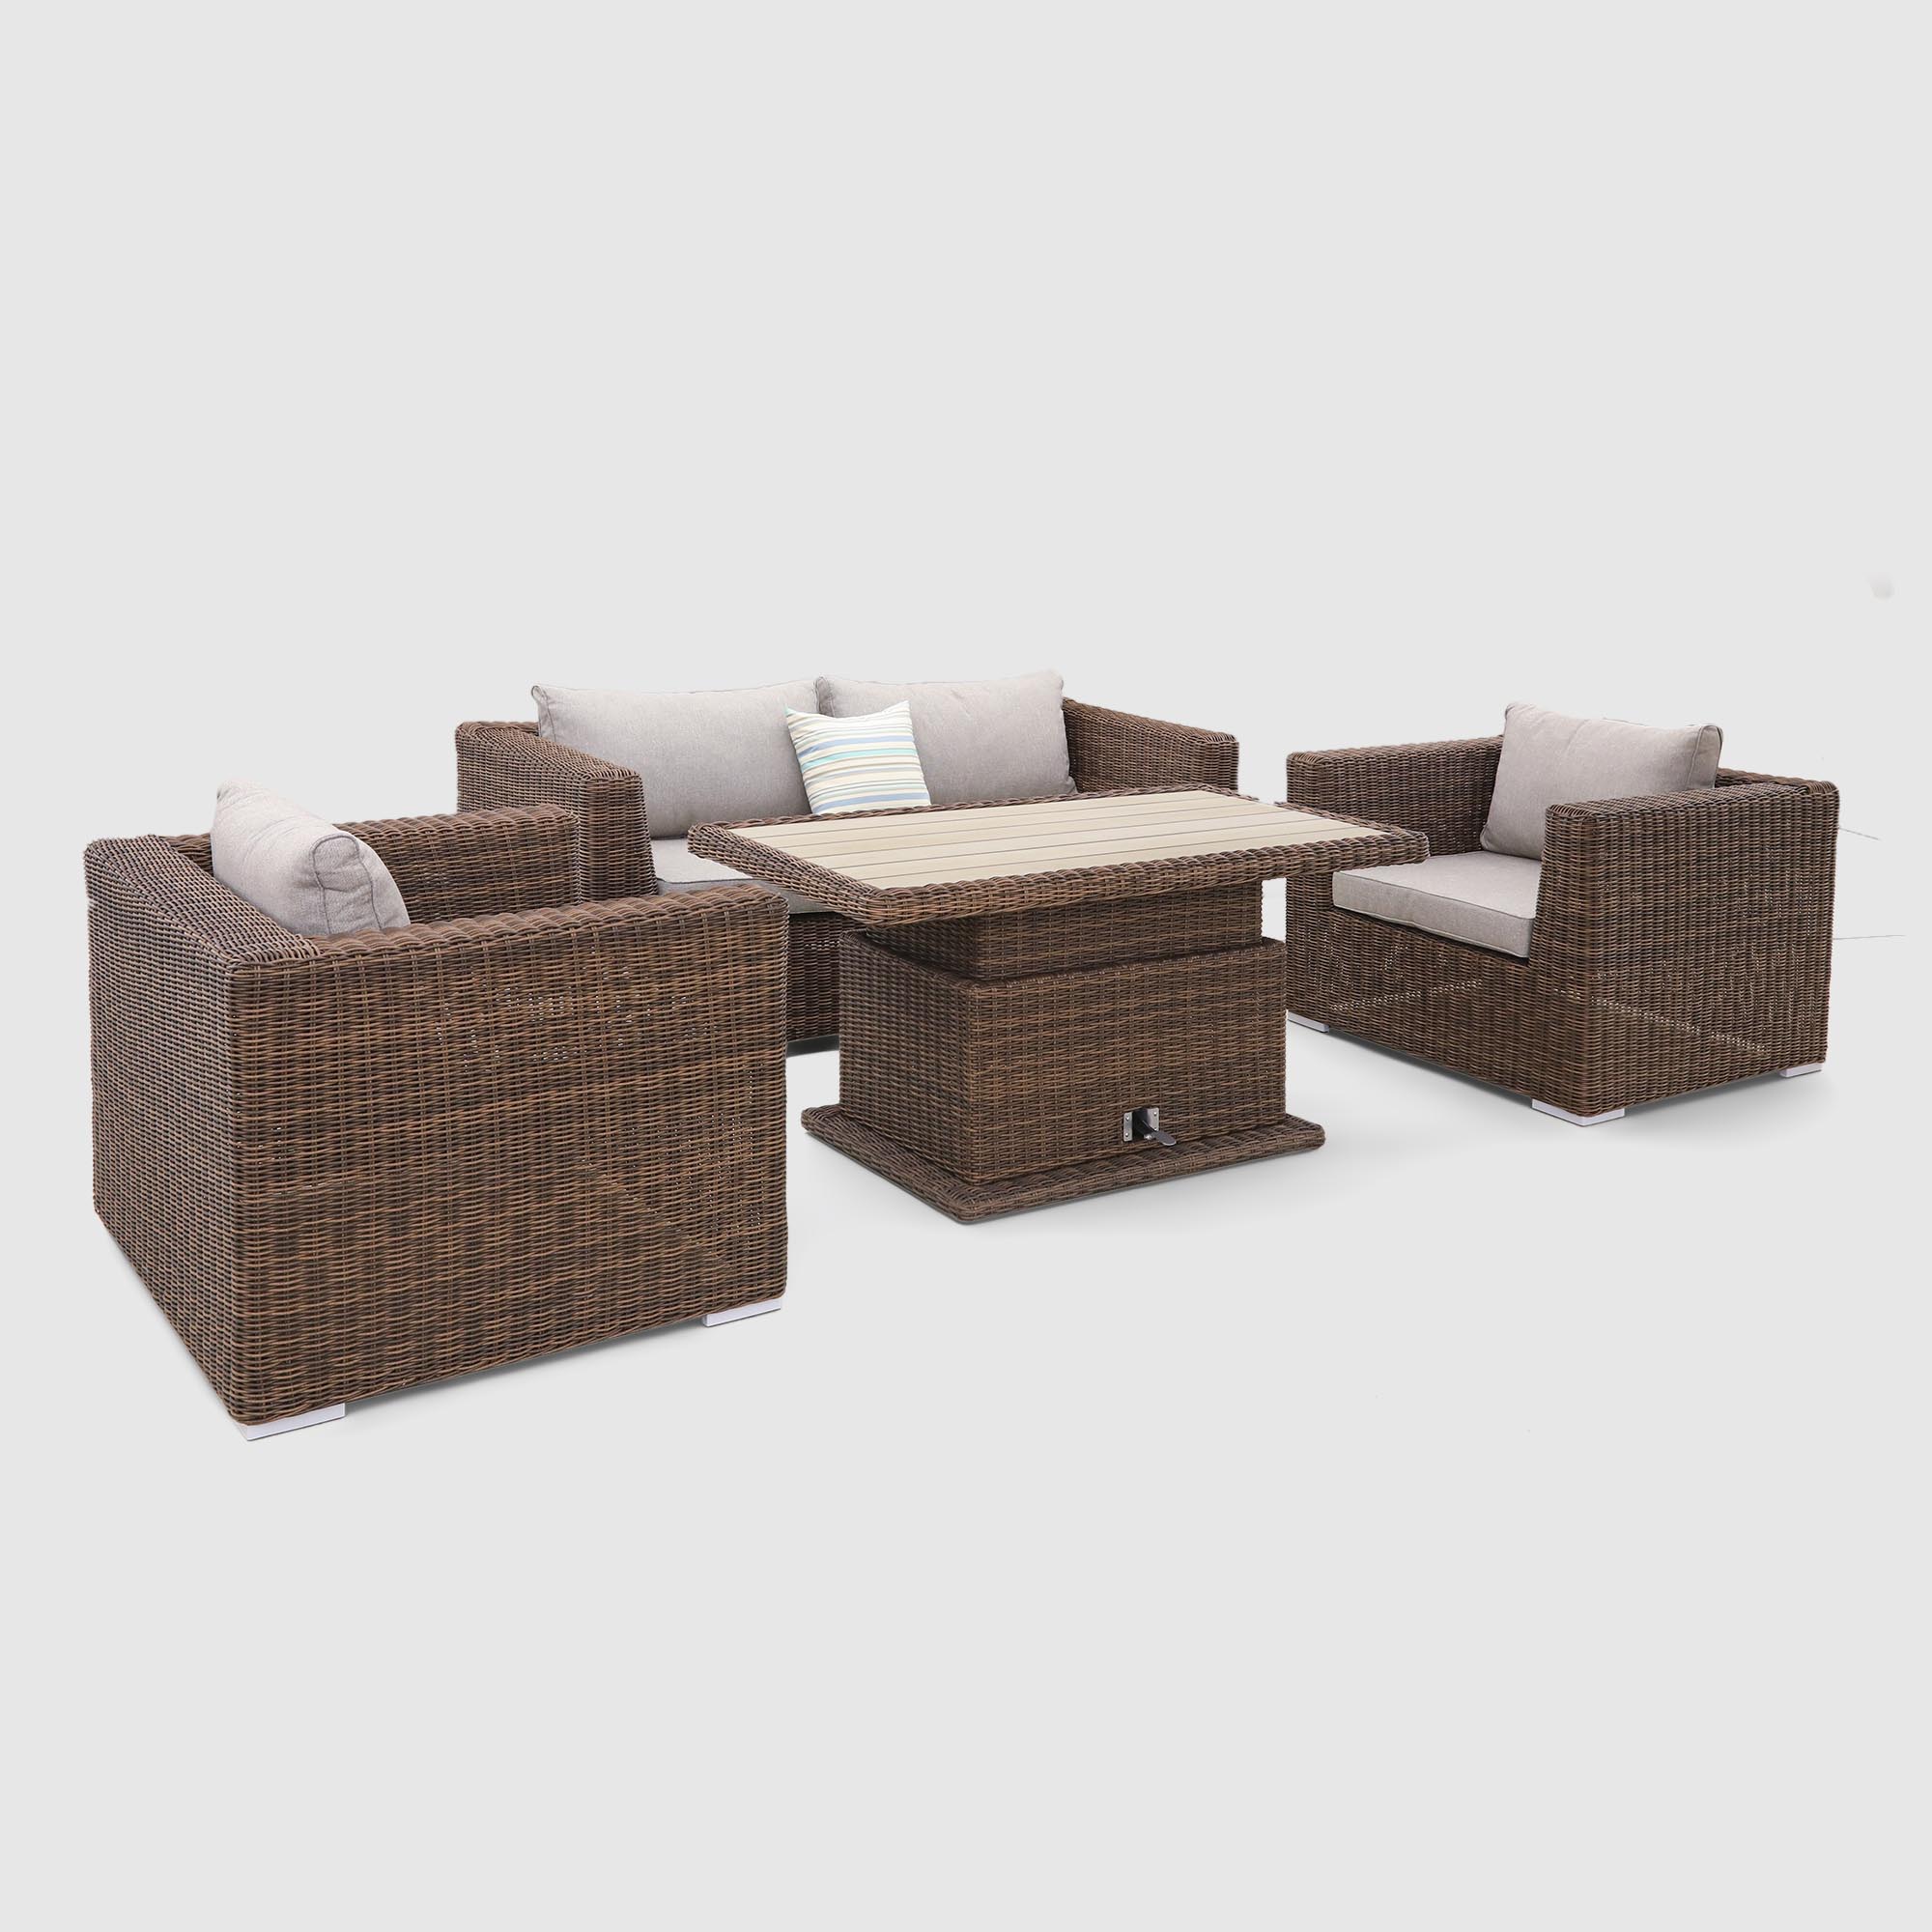 Комплект мебели Yuhang коричневый с серым 4 предмета, цвет бежевый, размер 205х98х80